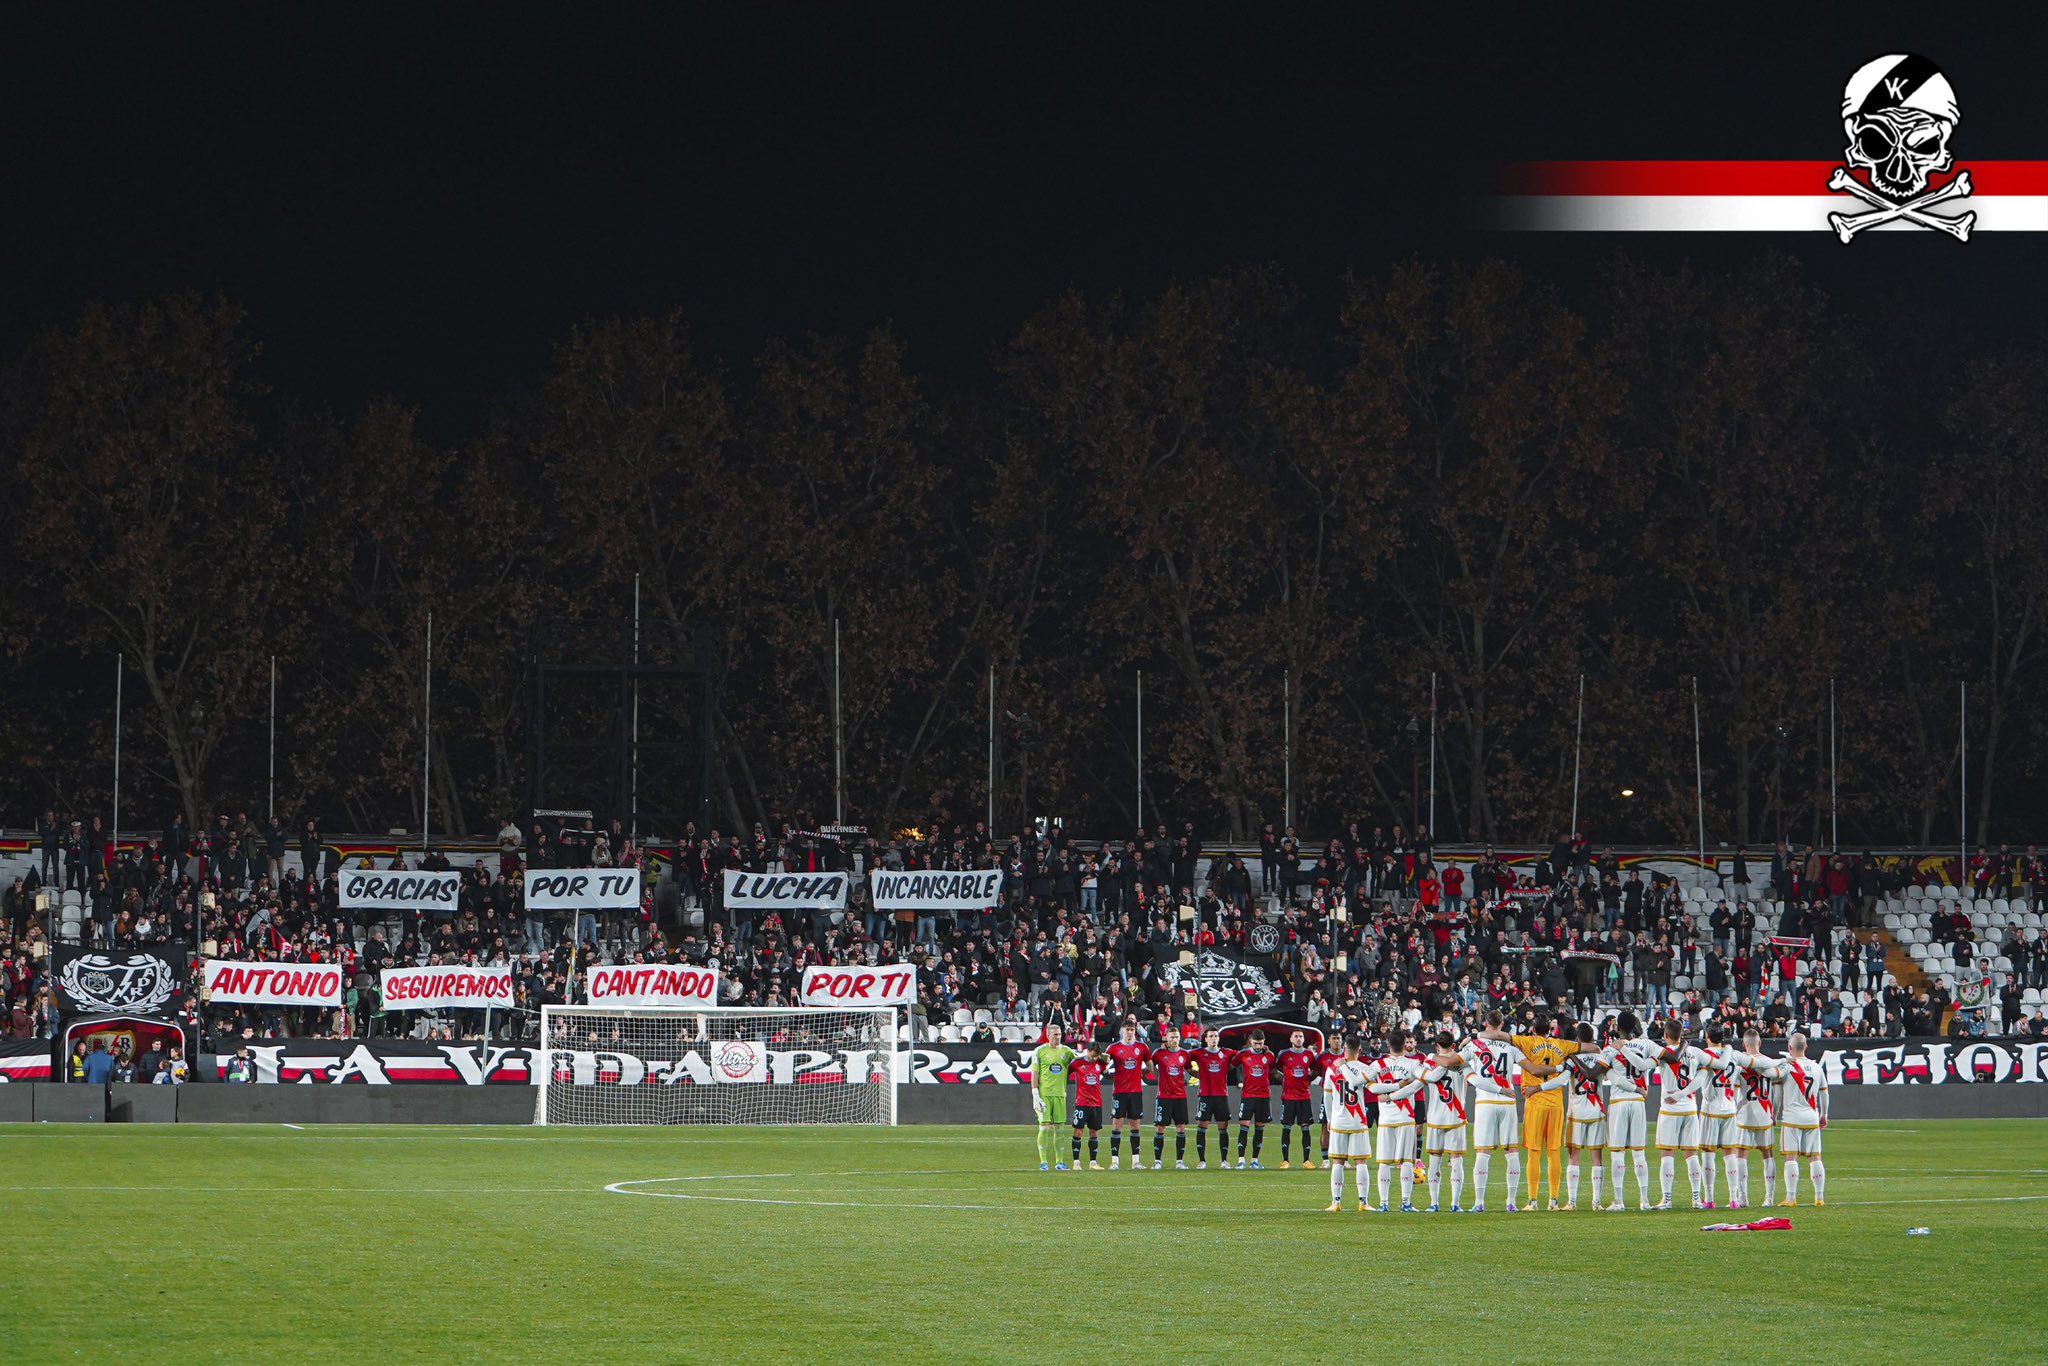 Tifo de Bunakeros en el Fondo del Estadio de Vallecas y minuto de silencio en recuerdo de Antonio Castilla Ferrer